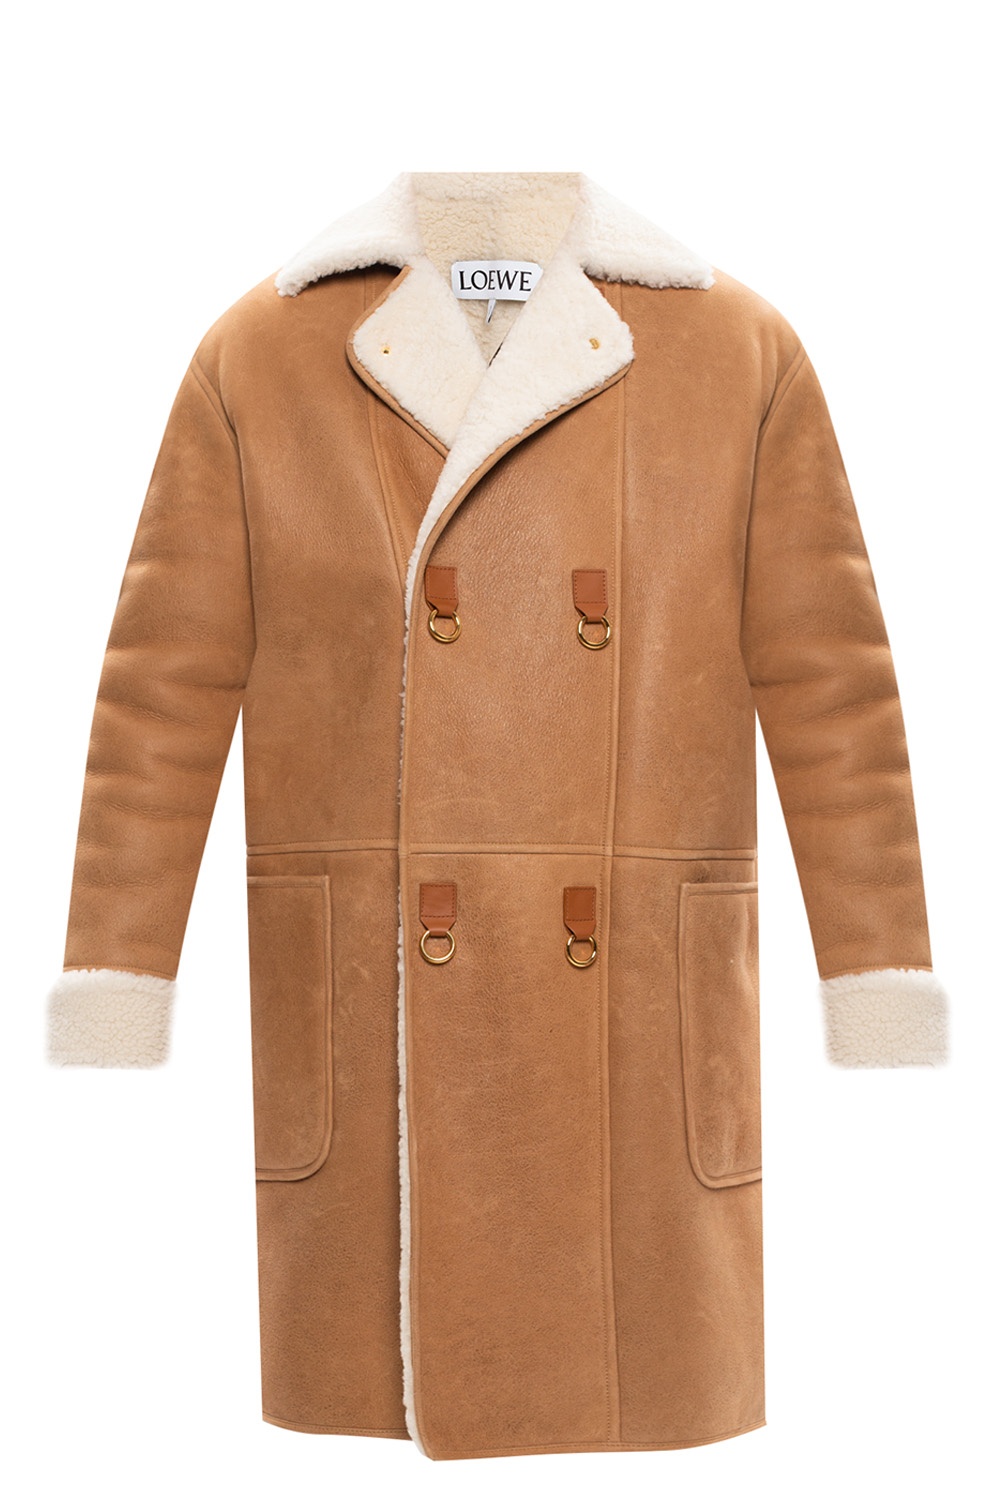 Loewe Shearling coat